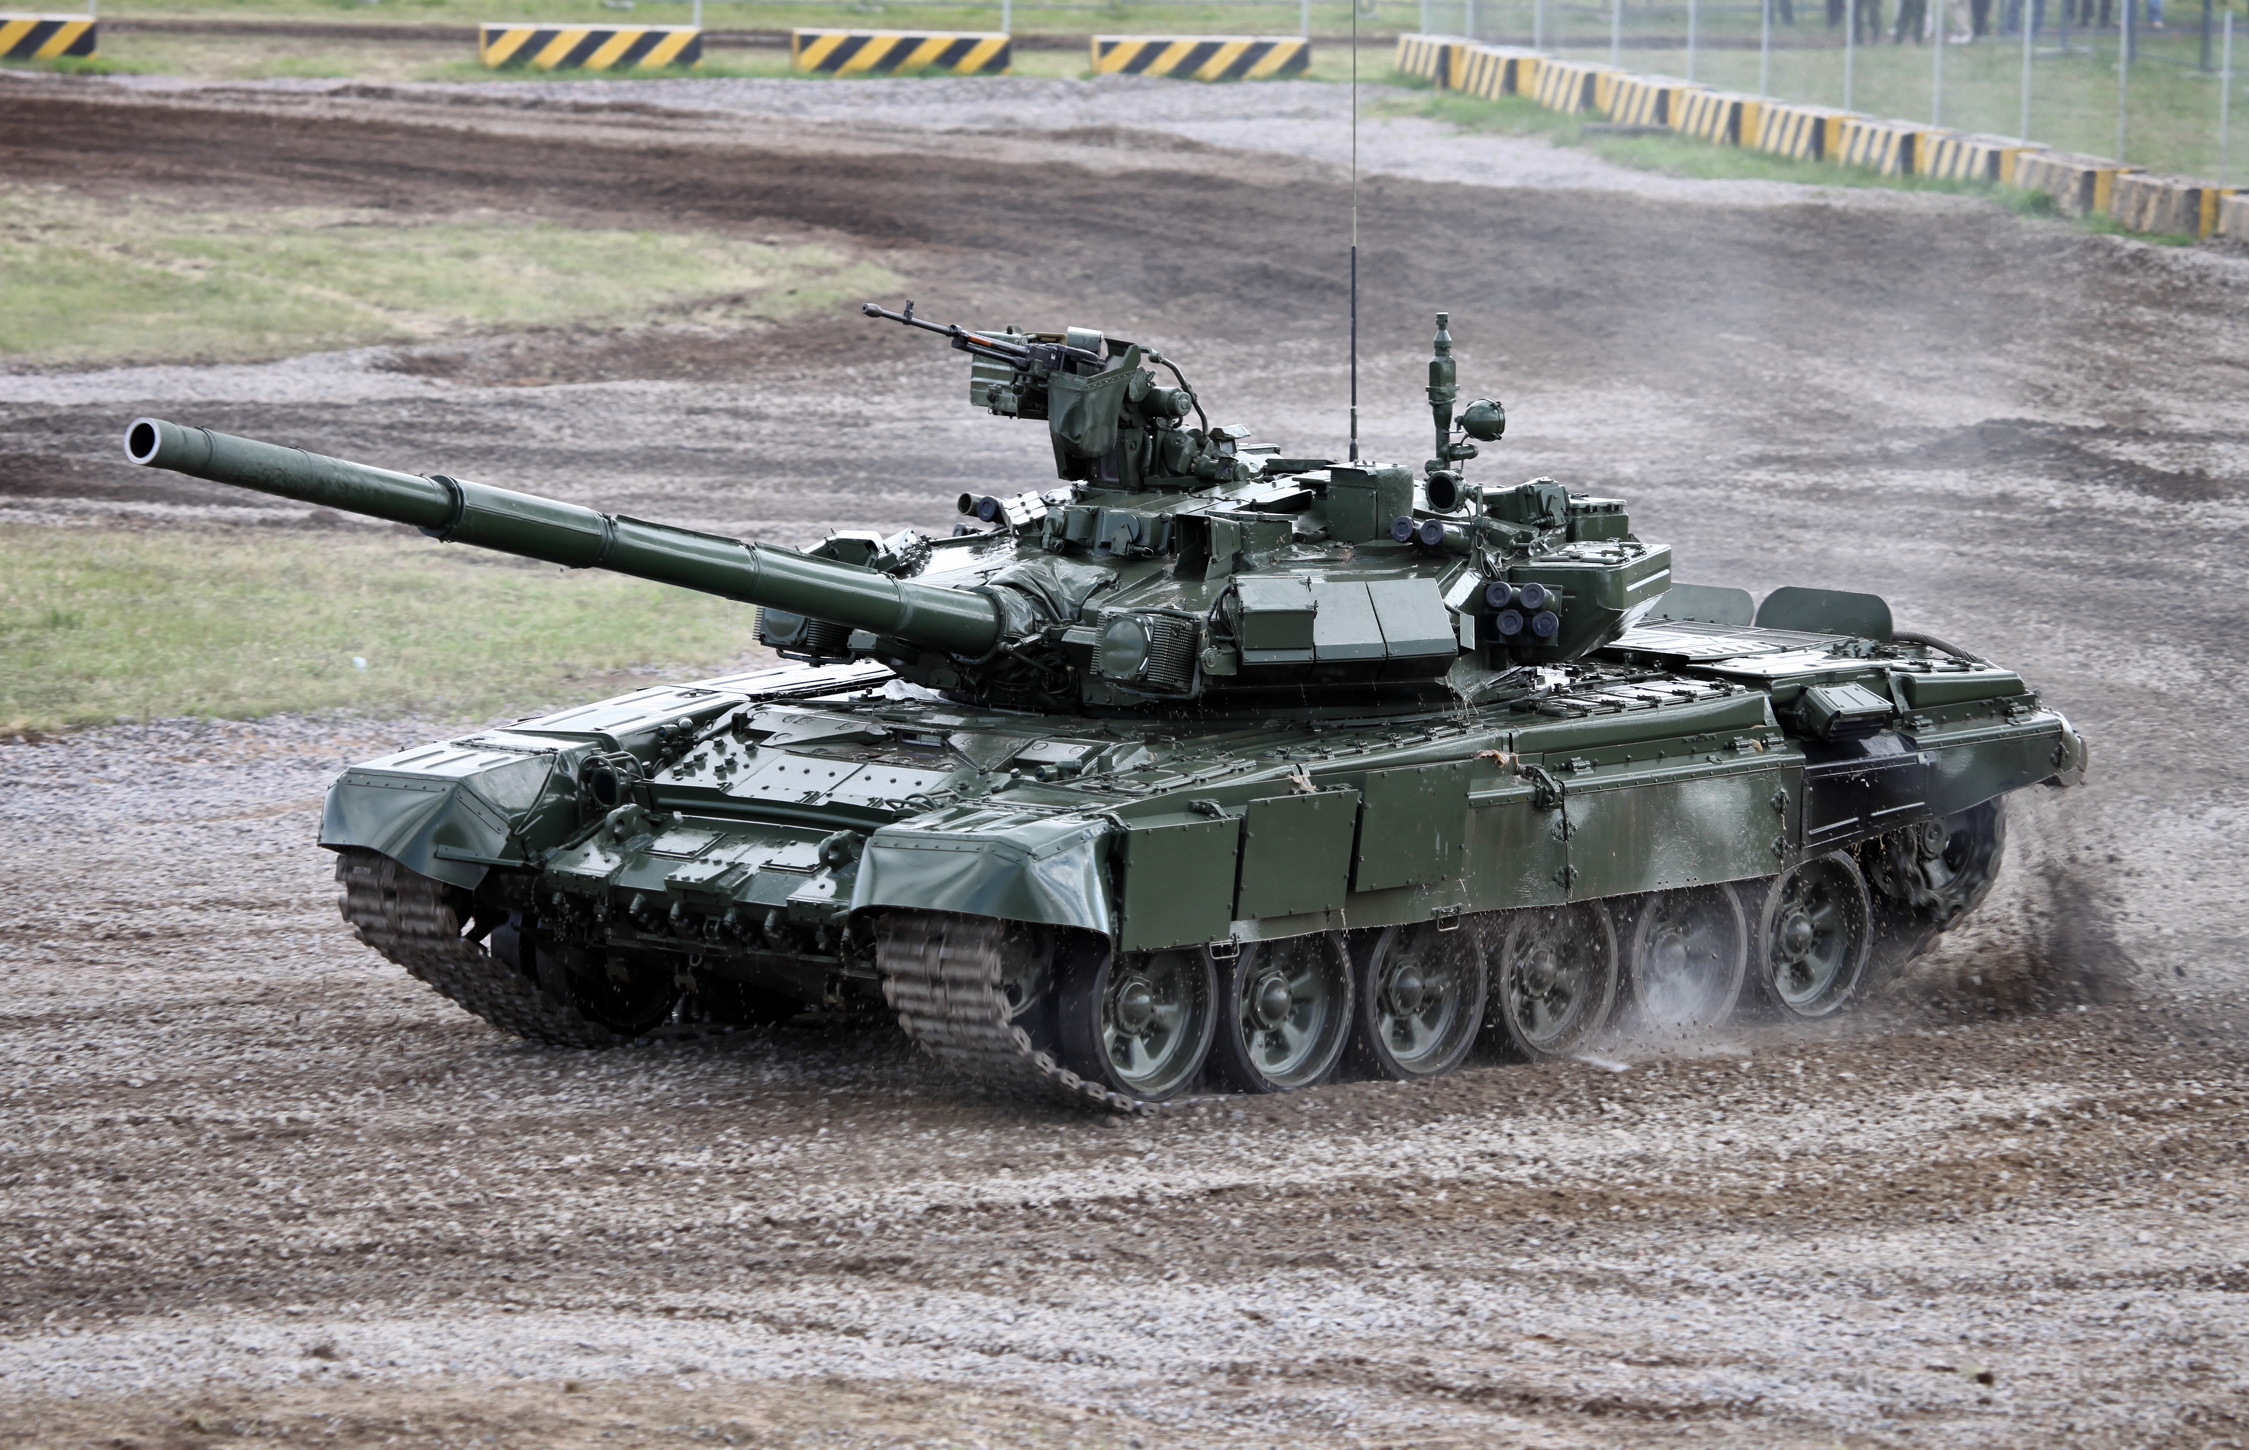 Liên doanh sản xuất đạn xe tăng T-90: Hình ảnh liên doanh sản xuất đạn xe tăng T-90 thể hiện khả năng kết hợp hợp tác công nghệ giữa Nga và các quốc gia khác. Với sự đóng góp của các đối tác, sản phẩm đạn này sẽ đảm bảo hiệu suất và chất lượng tối ưu cho xe tăng T-